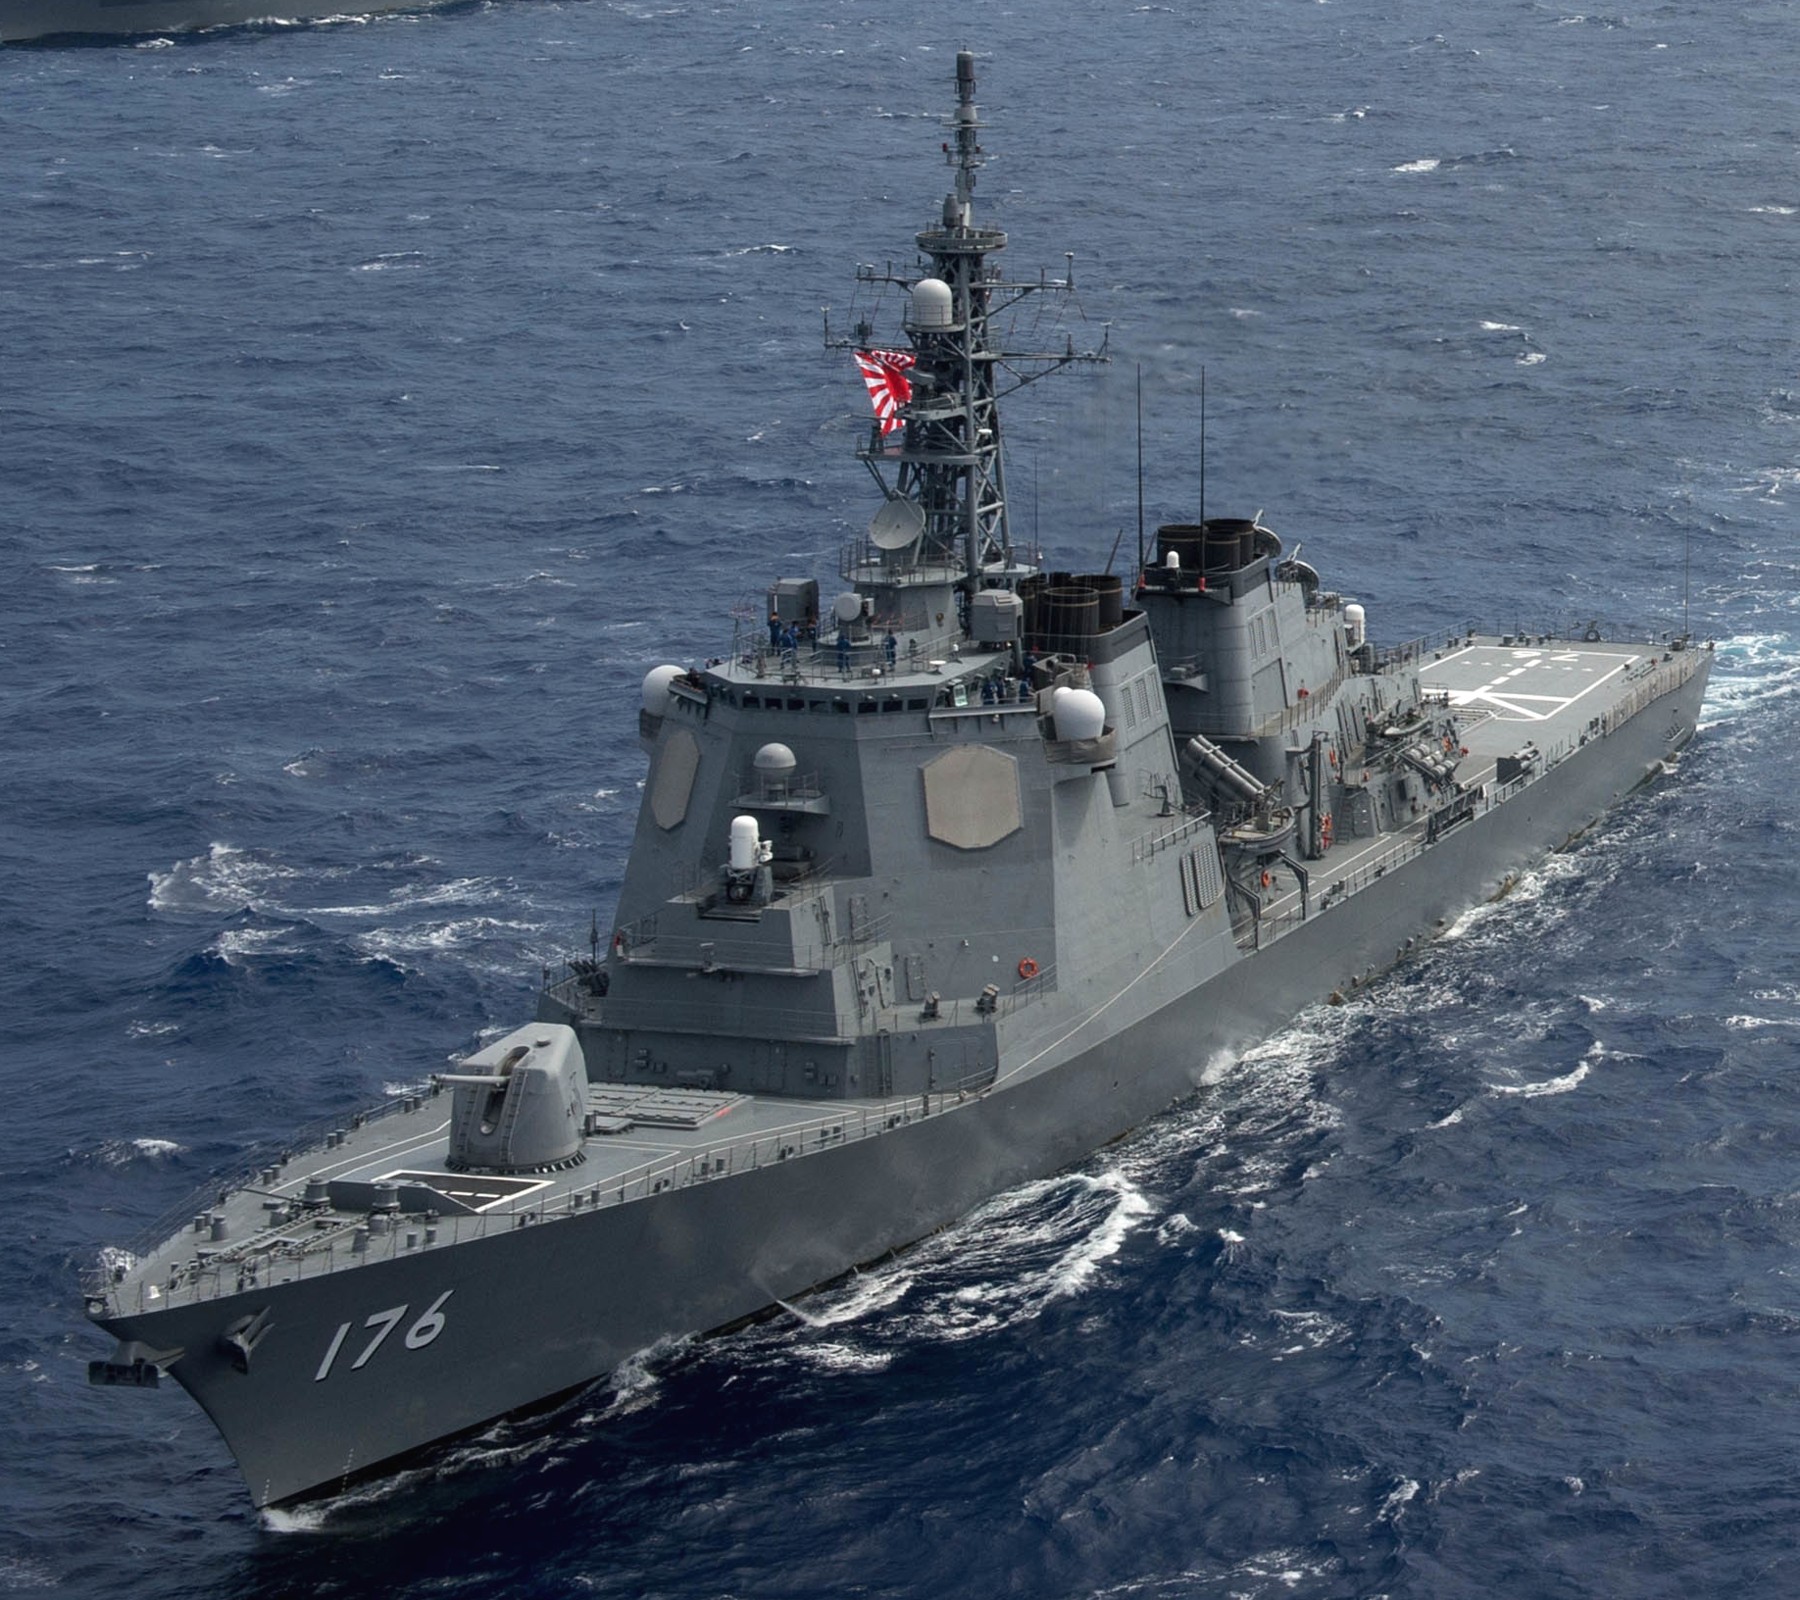 ddg-176 jds chokai kongou class destroyer japan maritime self defense force jmsdf 22